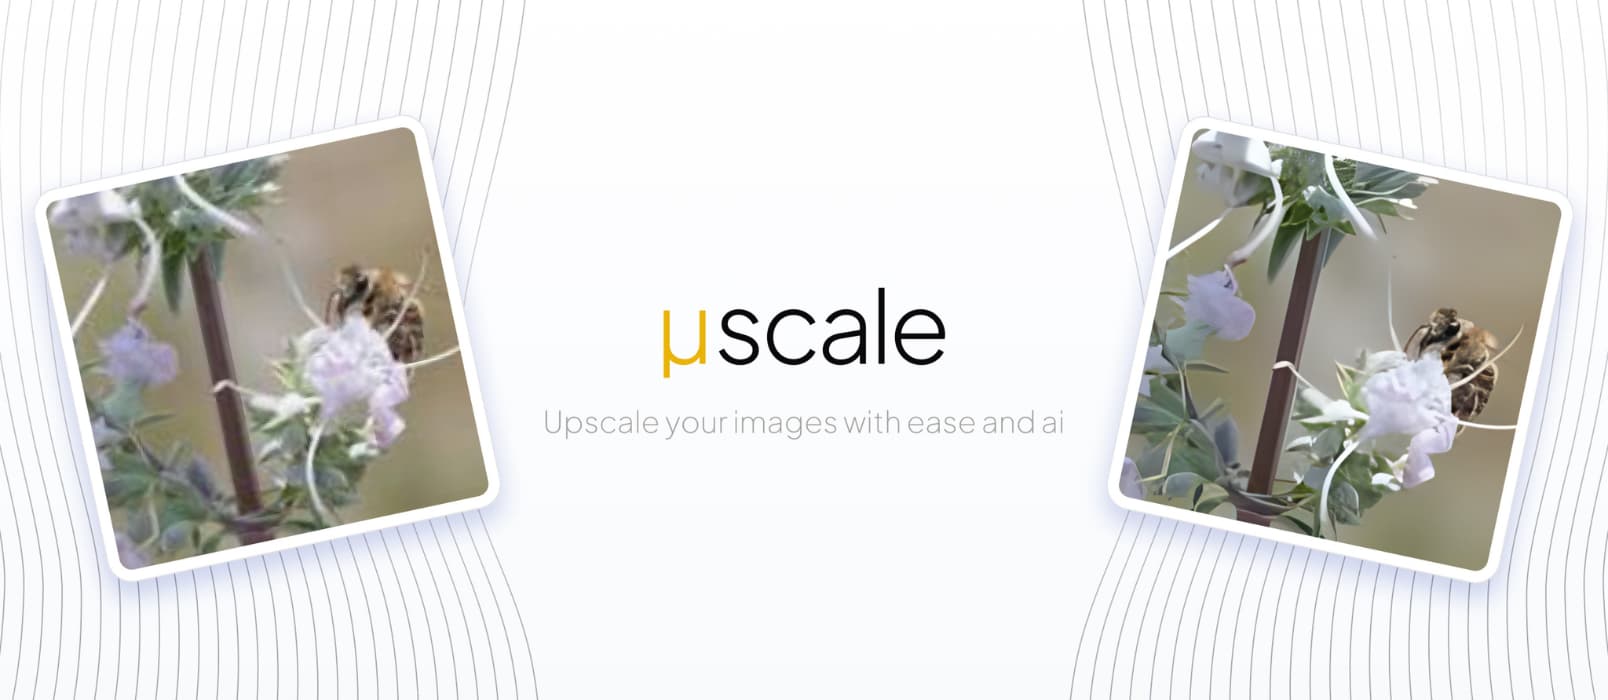 μScale – 利用 AI 算法，将图像放大 4 倍，免费、在线